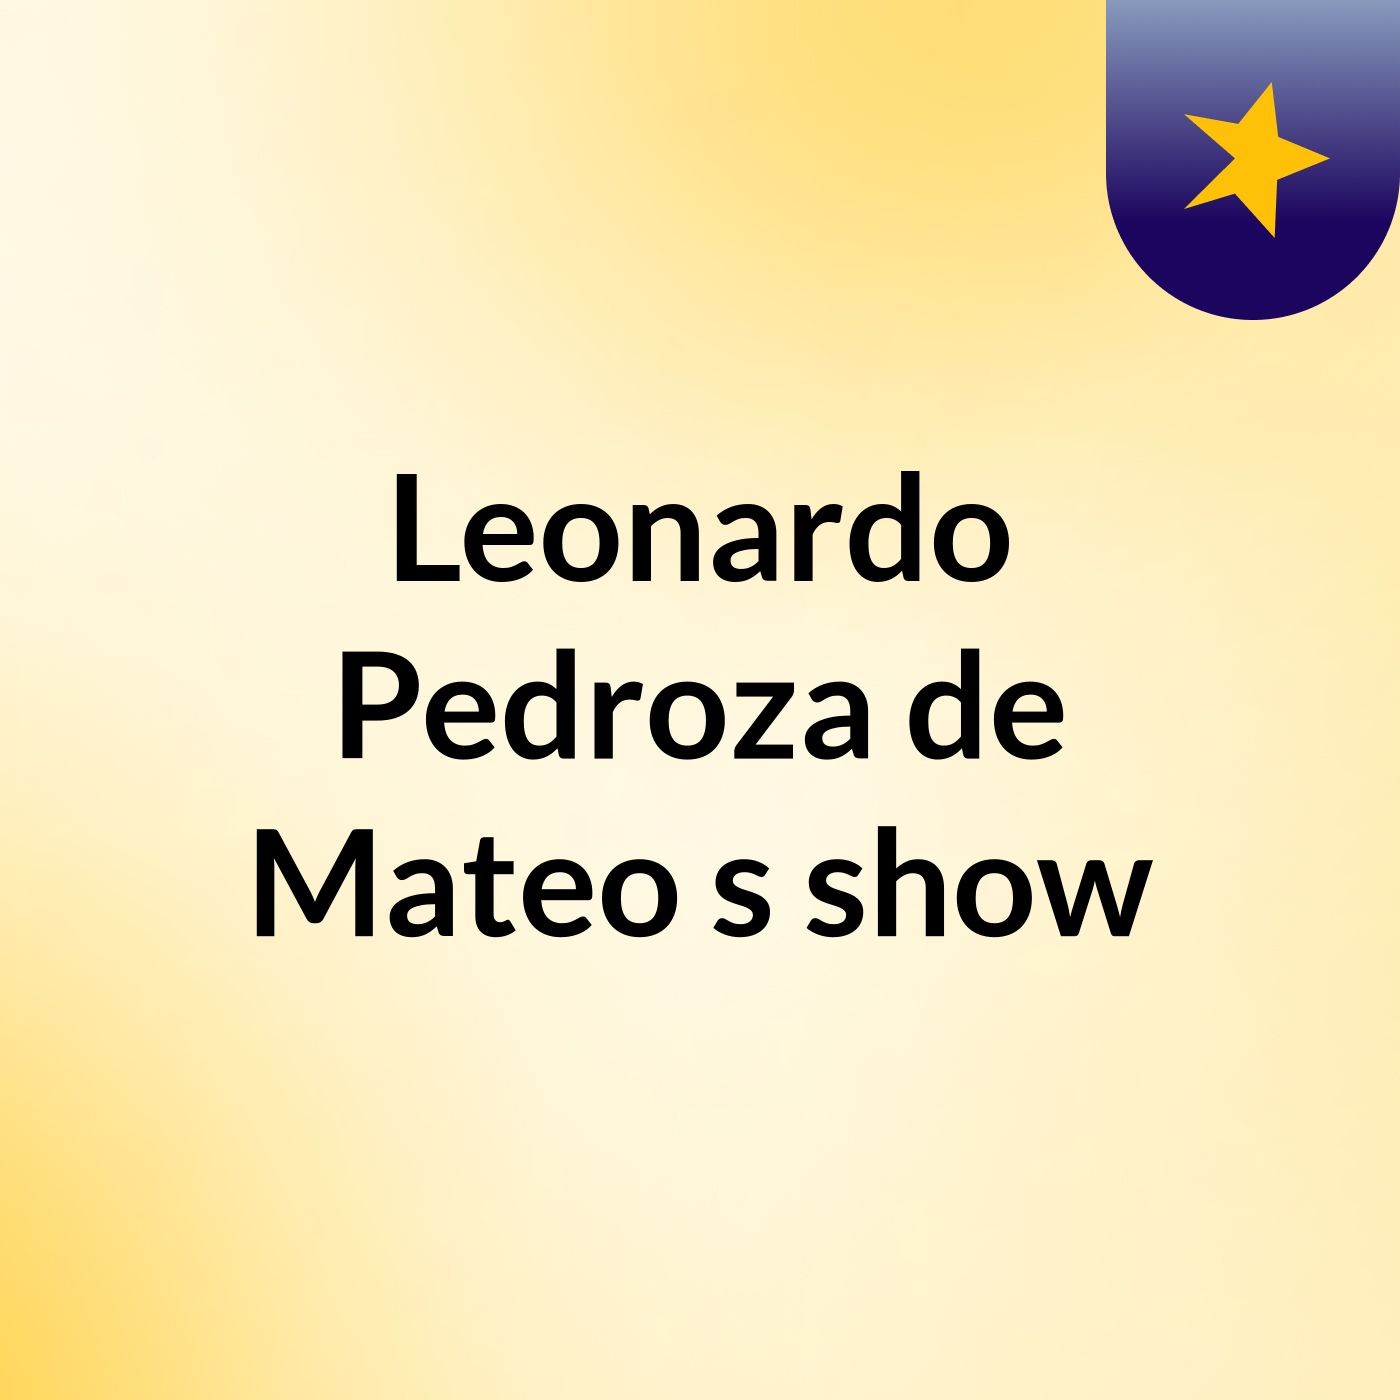 Leonardo Pedroza de Mateo's show